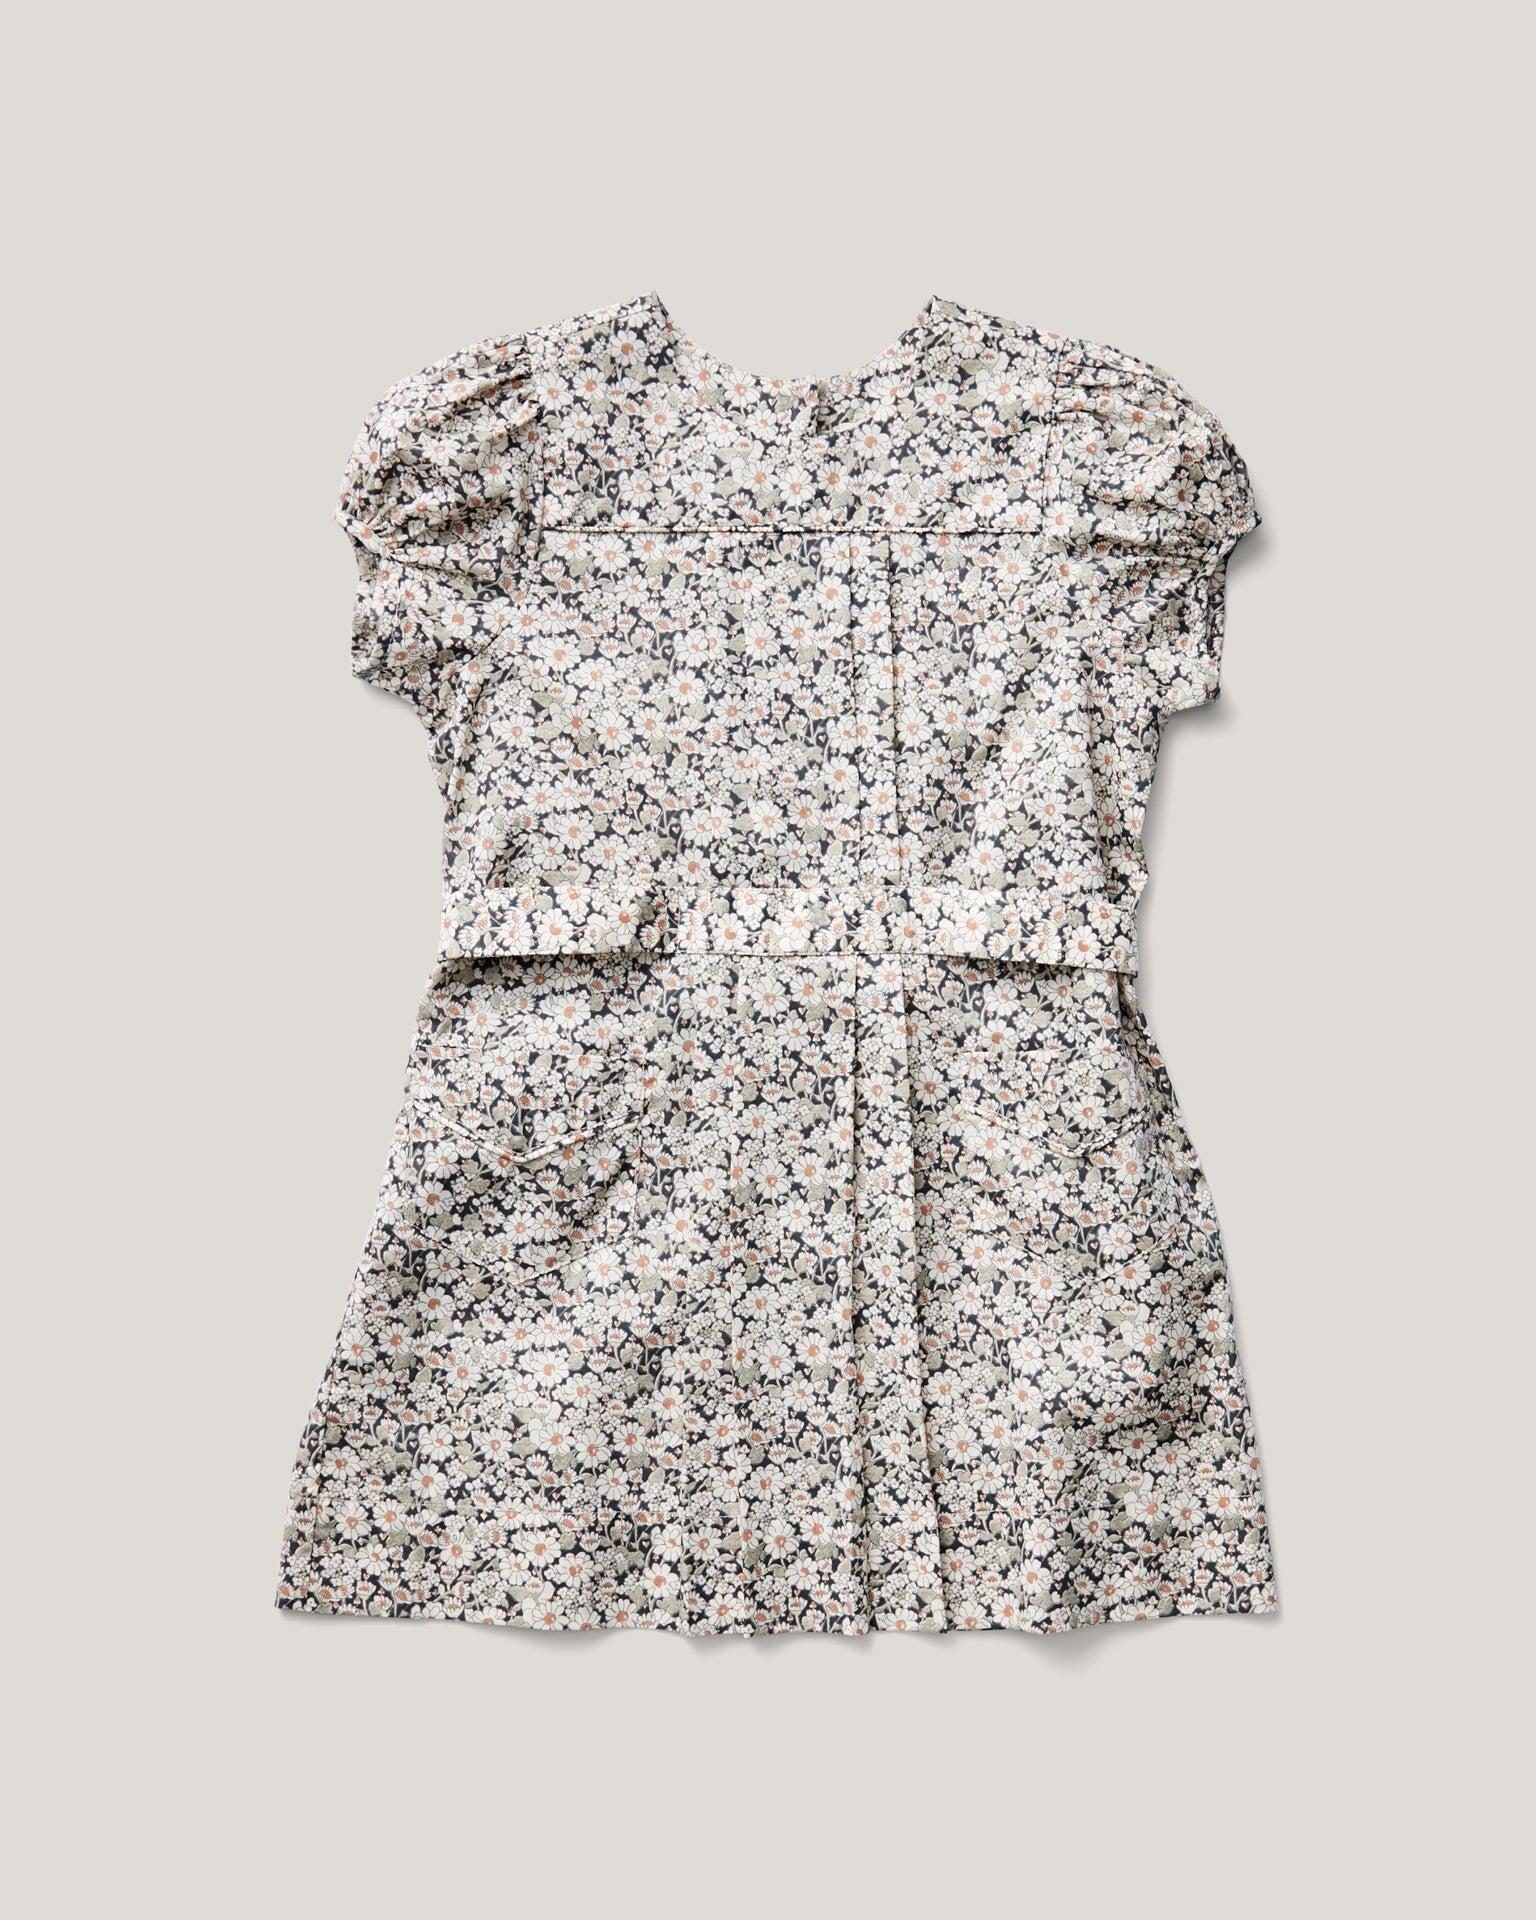 soor ploom ismay dress in daisy print - Little